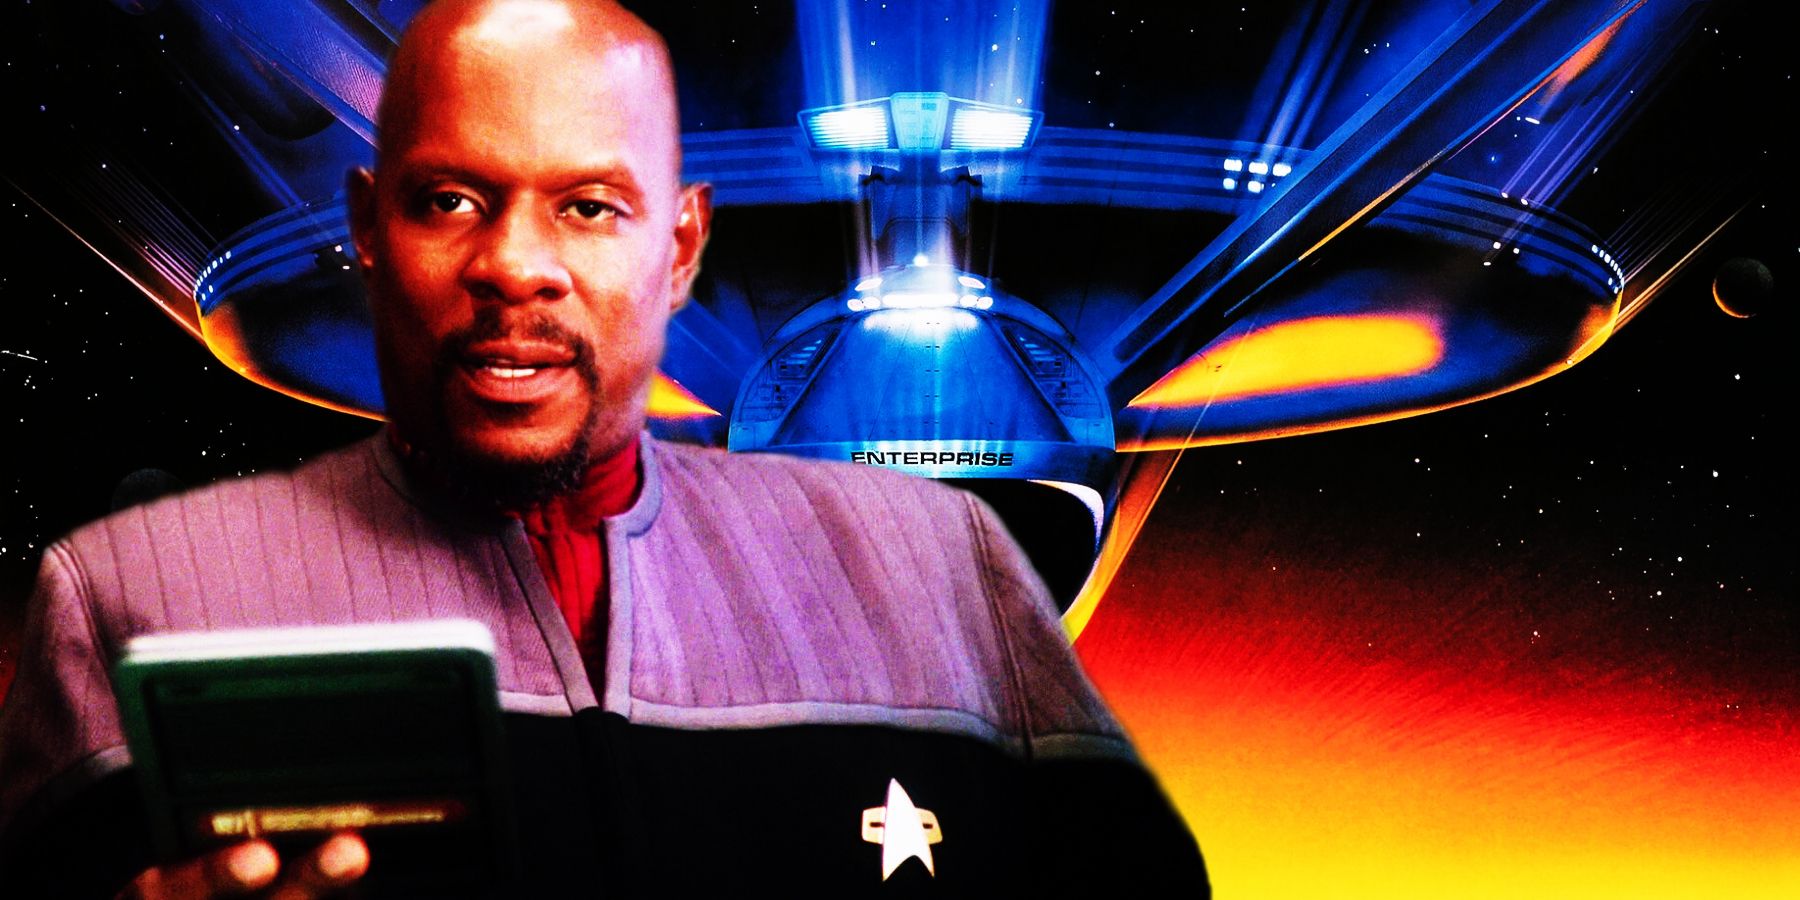 Captain Sisko from DS9 in front of the Star Trek 6 poster